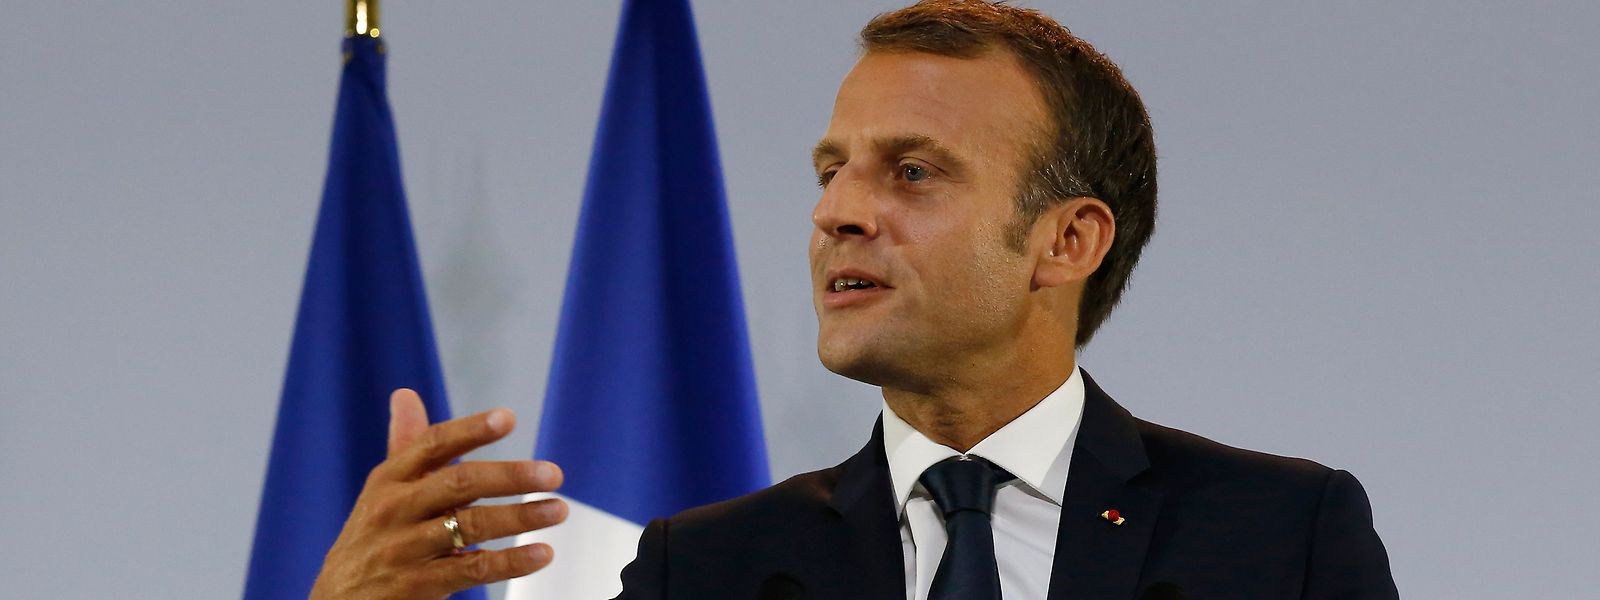 Der französische Präsident Emmanuel Macron hielt am Freitagmorgen eine Rede zur atomaren Abschreckung in der EU. 